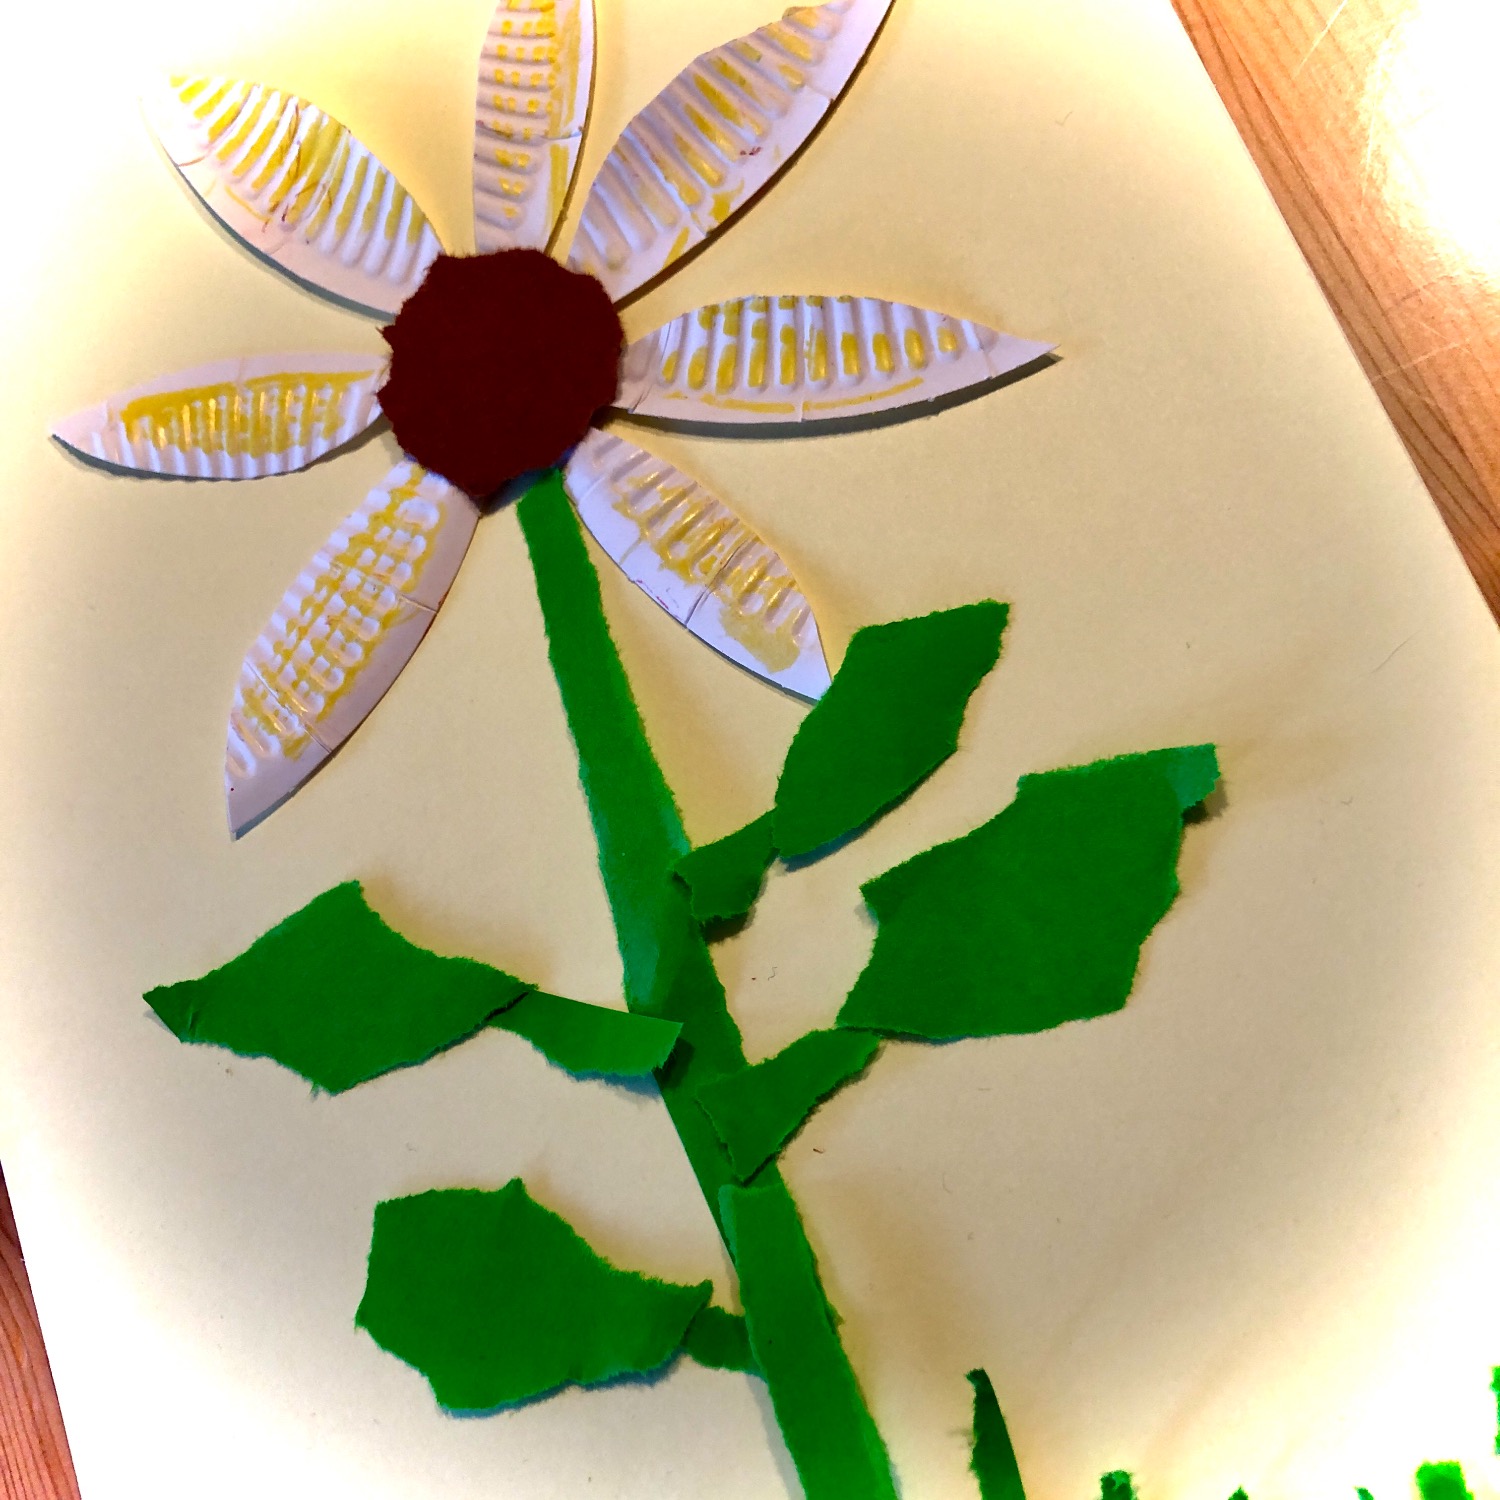 Titelbild zur Idee für die Beschäftigung mit Kindern 'Sonnenblume mit Pappteller-Blüten'